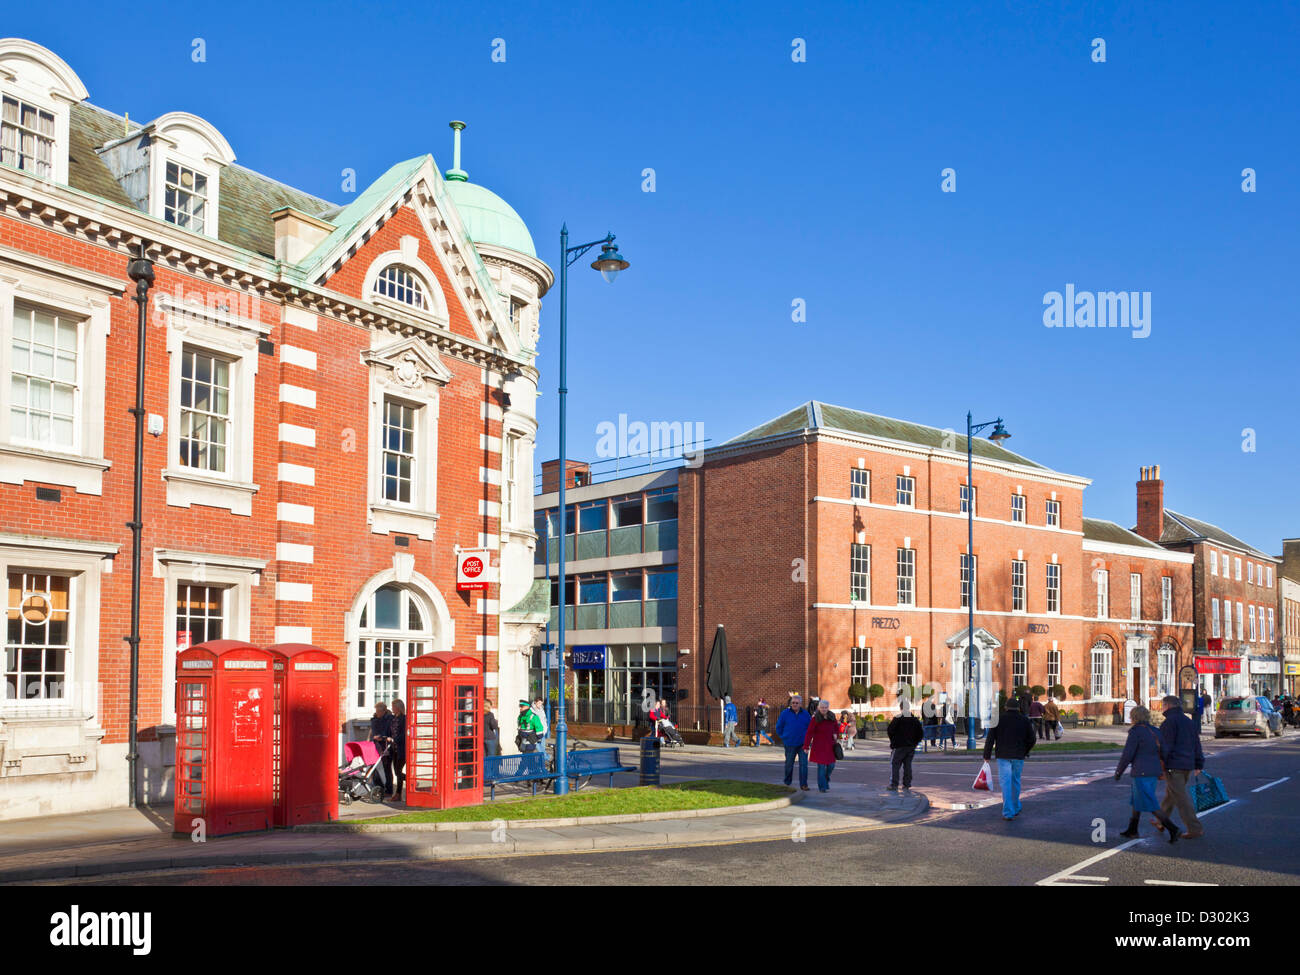 Rouge britannique traditionnel et des cabines téléphoniques à l'extérieur du bureau de poste du centre-ville de Boston Bargate Lincolnshire England UK GB EU Europe Banque D'Images